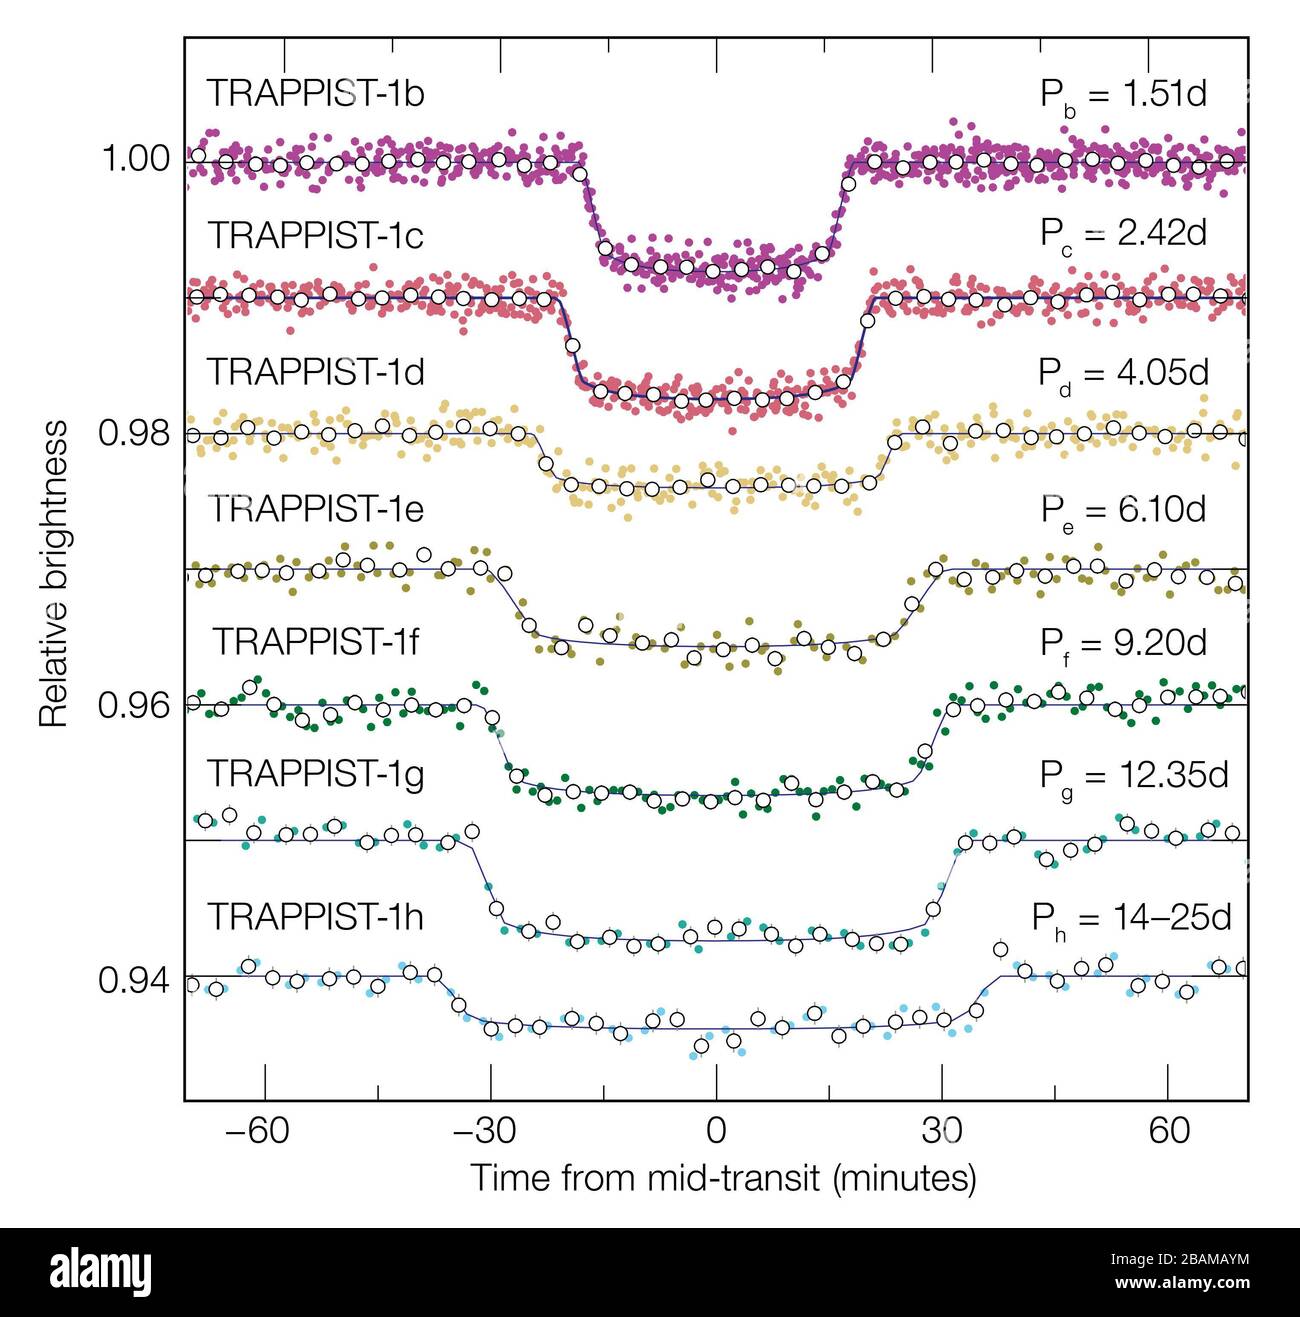 'English: Ce diagramme montre comment la lumière de la sombre étoile naine rouge ultra cool TRAPPIST-1 s'estompe comme chacune de ses sept planètes connues passe devant elle et bloque une partie de sa lumière. Les planètes plus grandes créent des creux plus profonds et les plus de distances ont des transits plus durables car elles sont en orbite plus lentement. Ces données ont été obtenues à partir d'observations faites avec le télescope spatial Spitzer de la NASA. Español: Este diagrama muestra cómo la luz de la tenue estrella enana roja ultrafría TRAPPIST-1 disminuye a medida que cada uno de sus siete planetas conocidos pasa por delante de ella y quea parte Banque D'Images